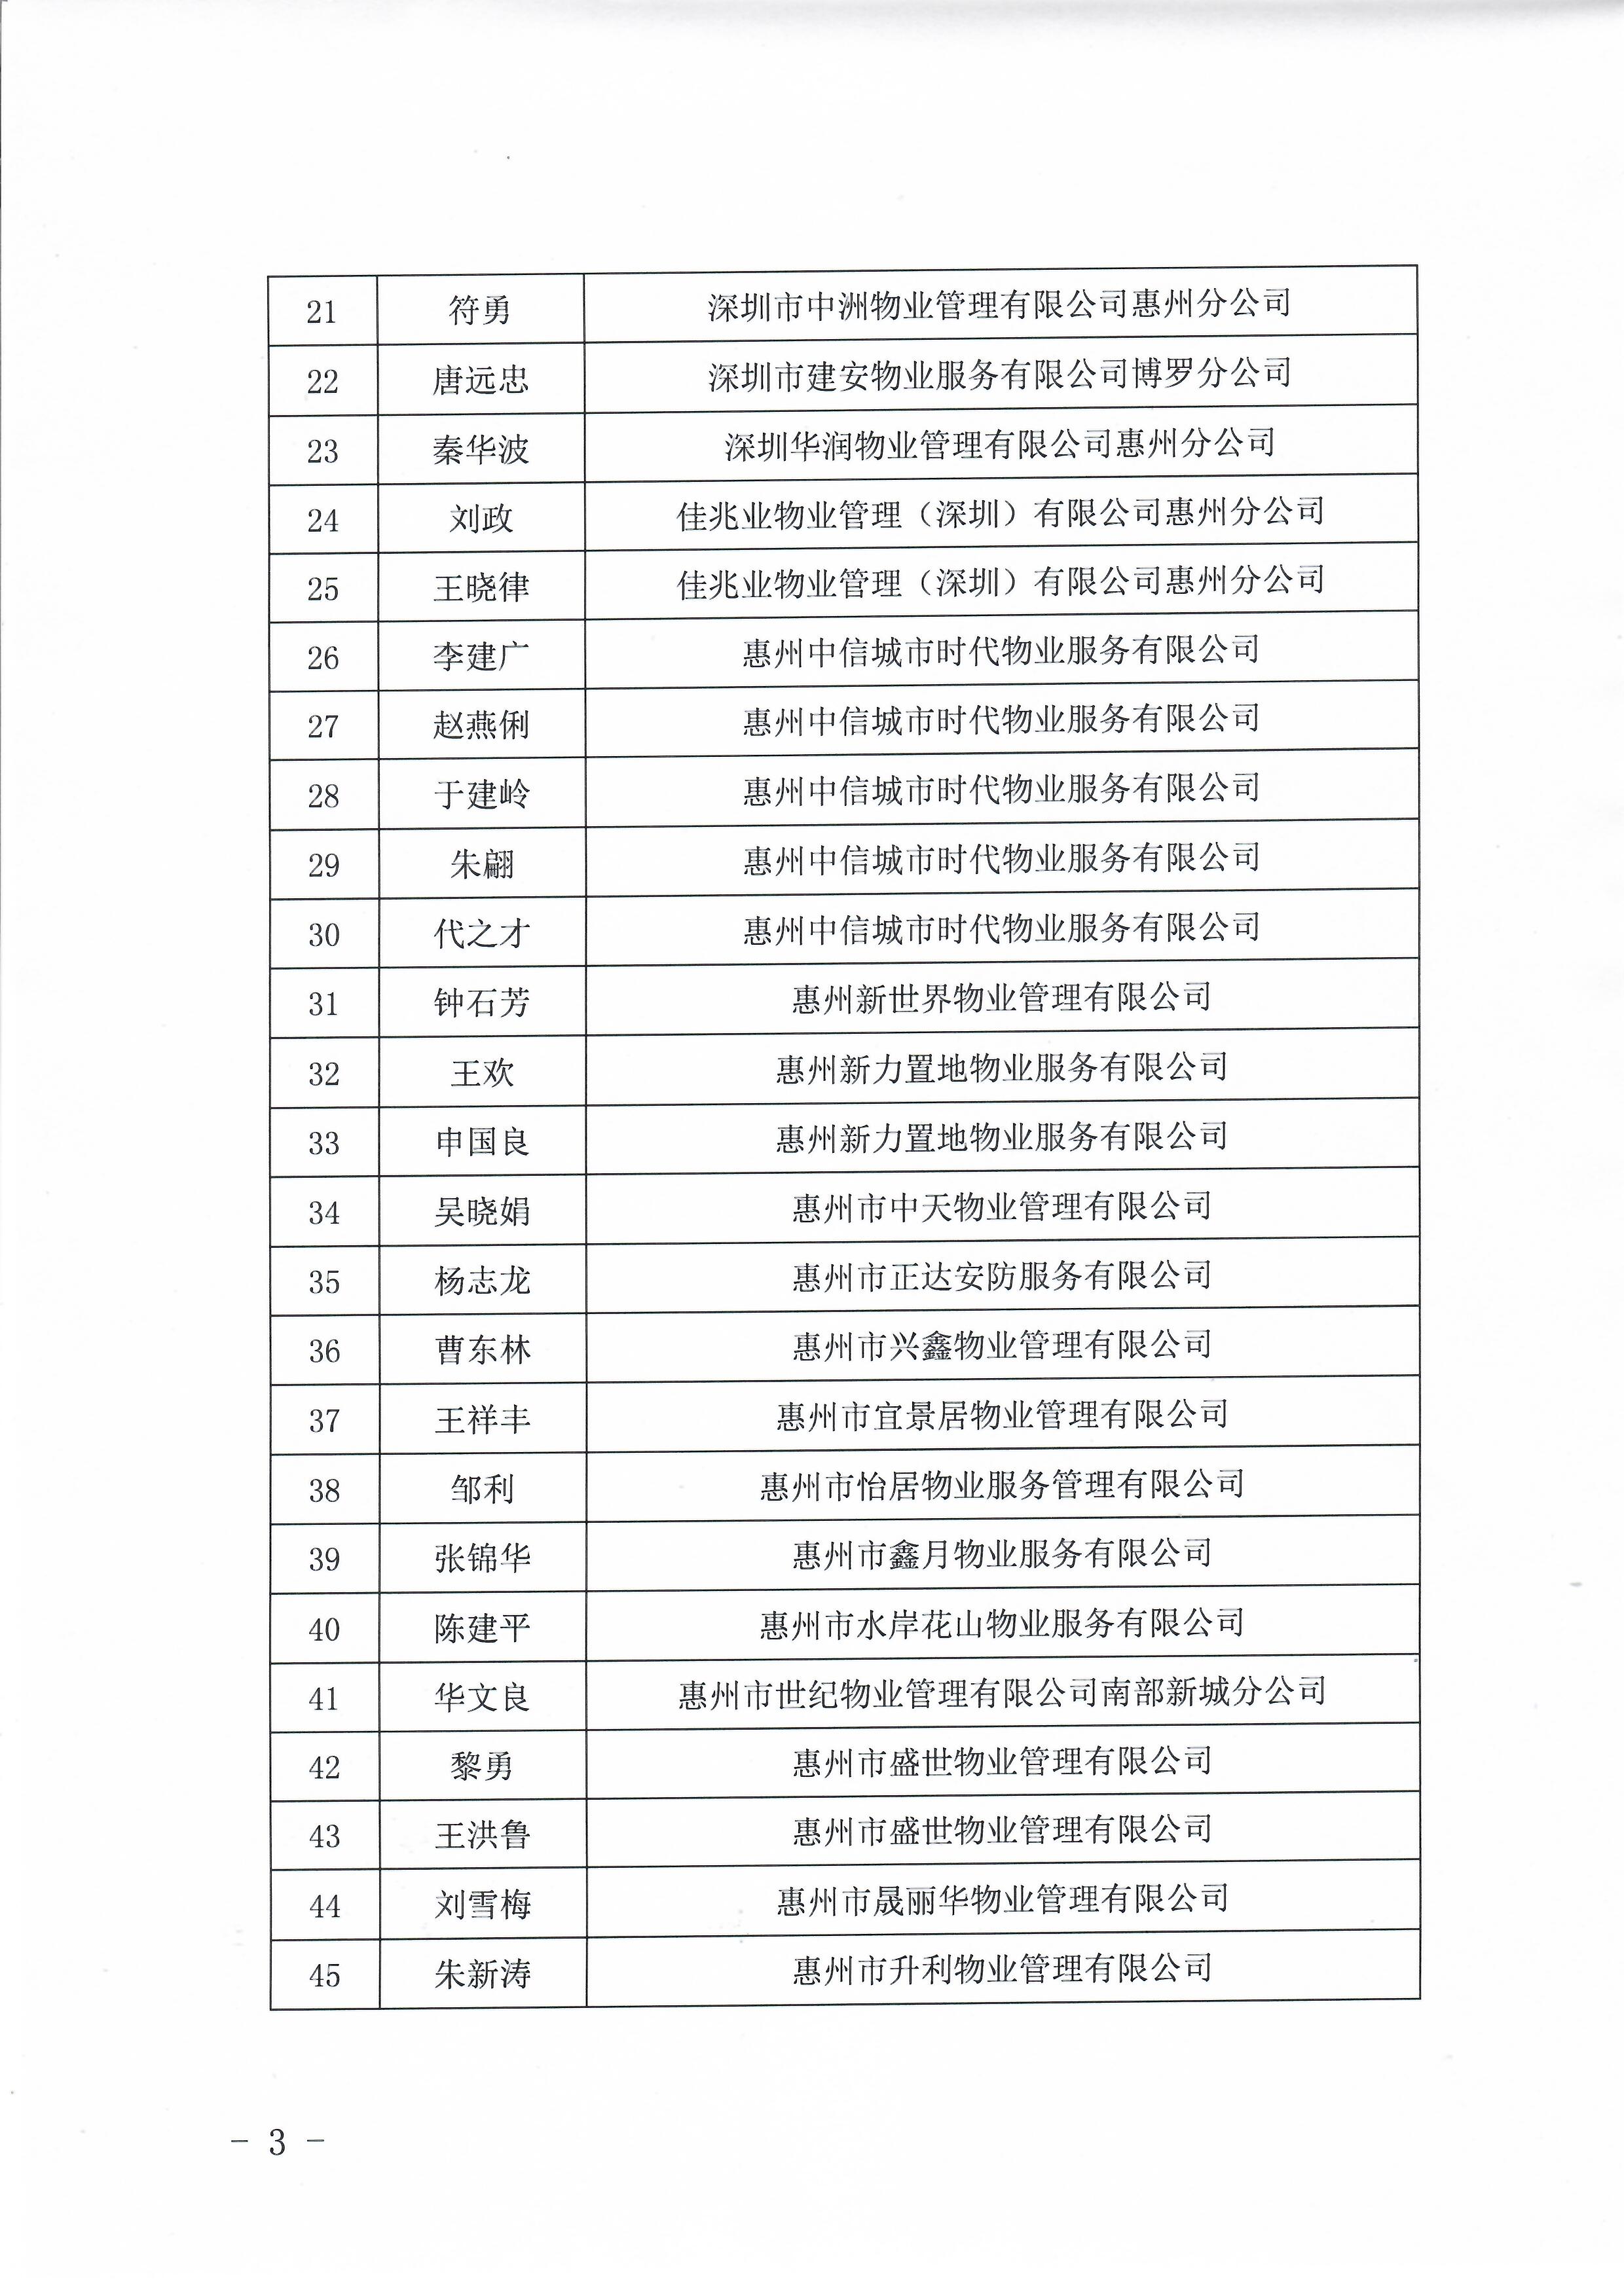 关于惠州市物业服务行业专家库入库成员名单的公告3.jpg